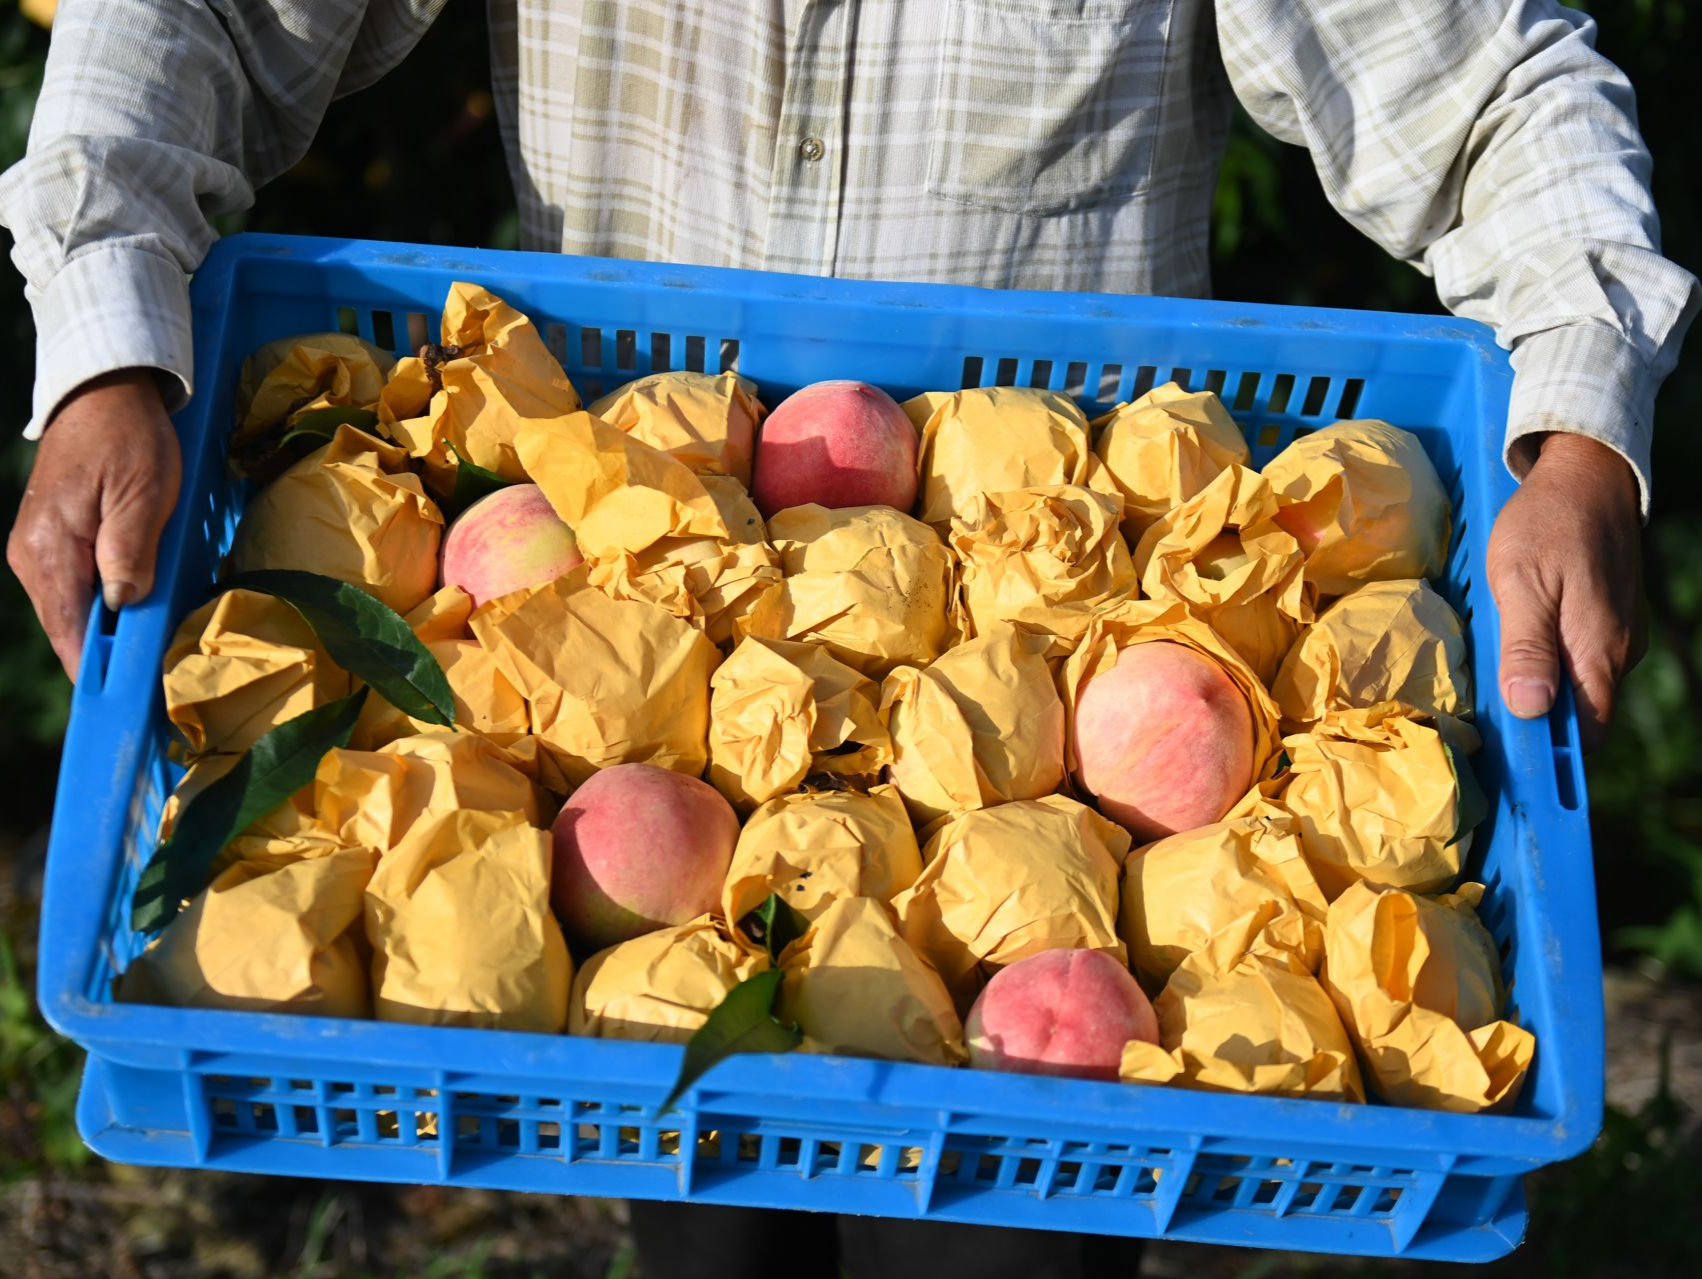 产自阳山的水蜜桃能不能叫“阳山水蜜桃”？上海法院这样判